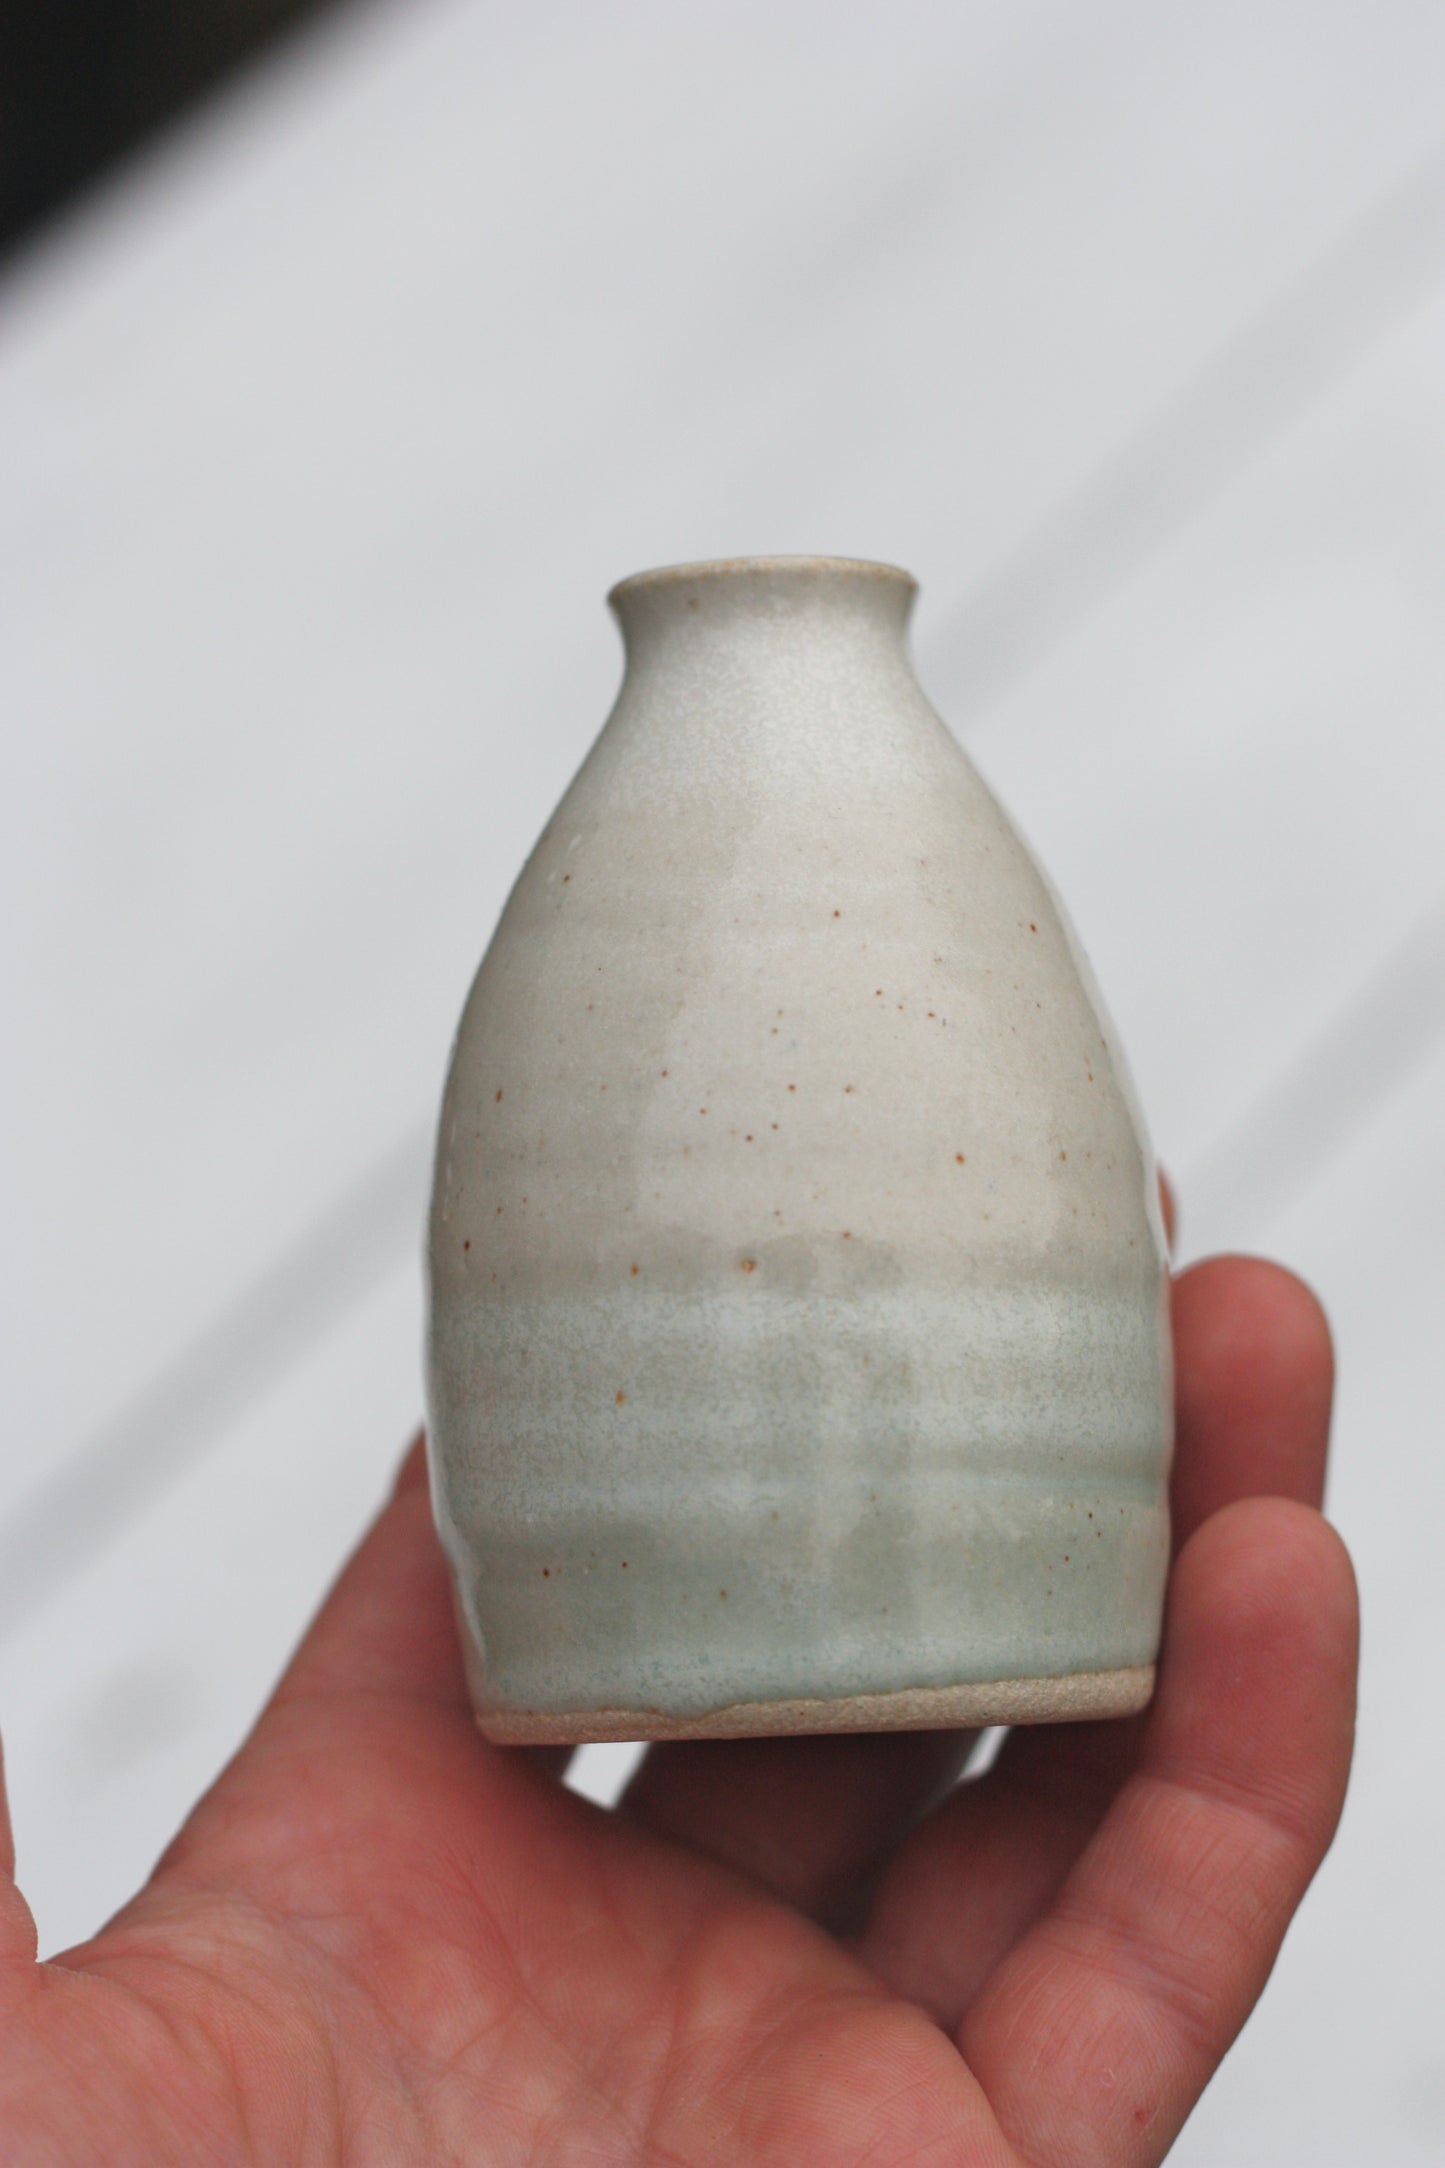 Bud Bottle Vase Blue and White Stoneware Pottery